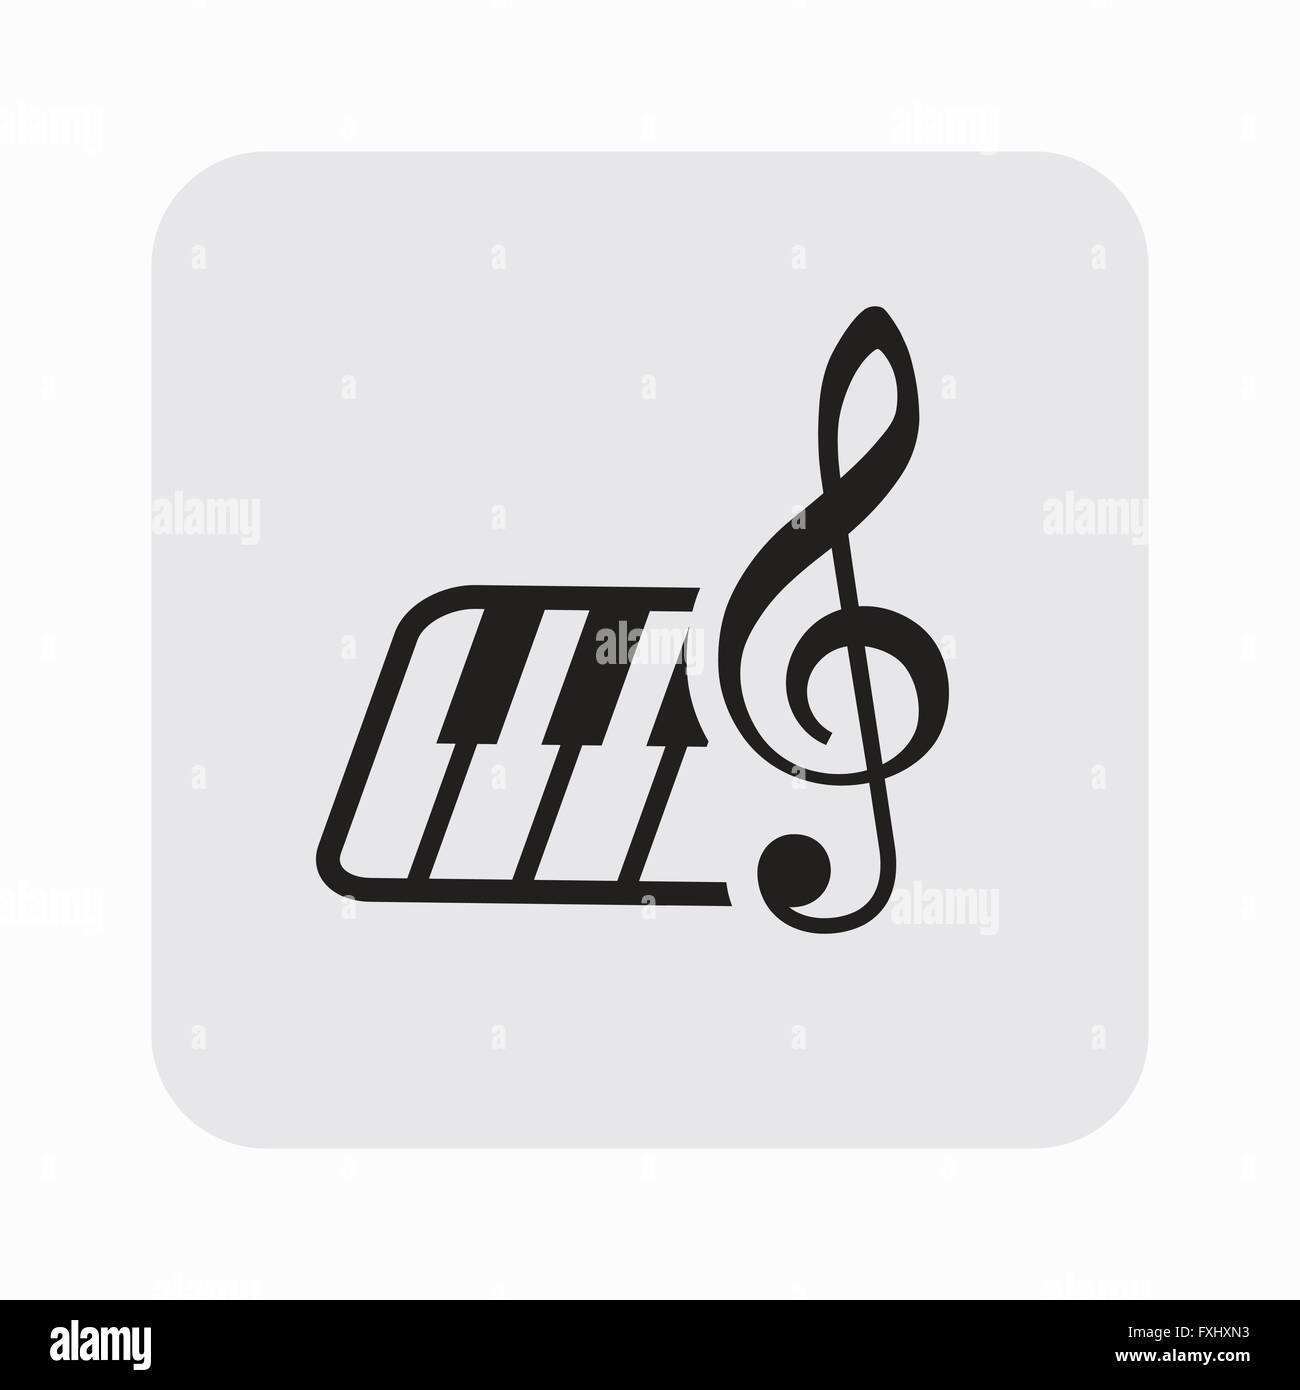 Le pictogramme de touche de musique et clavier Image Vectorielle Stock -  Alamy